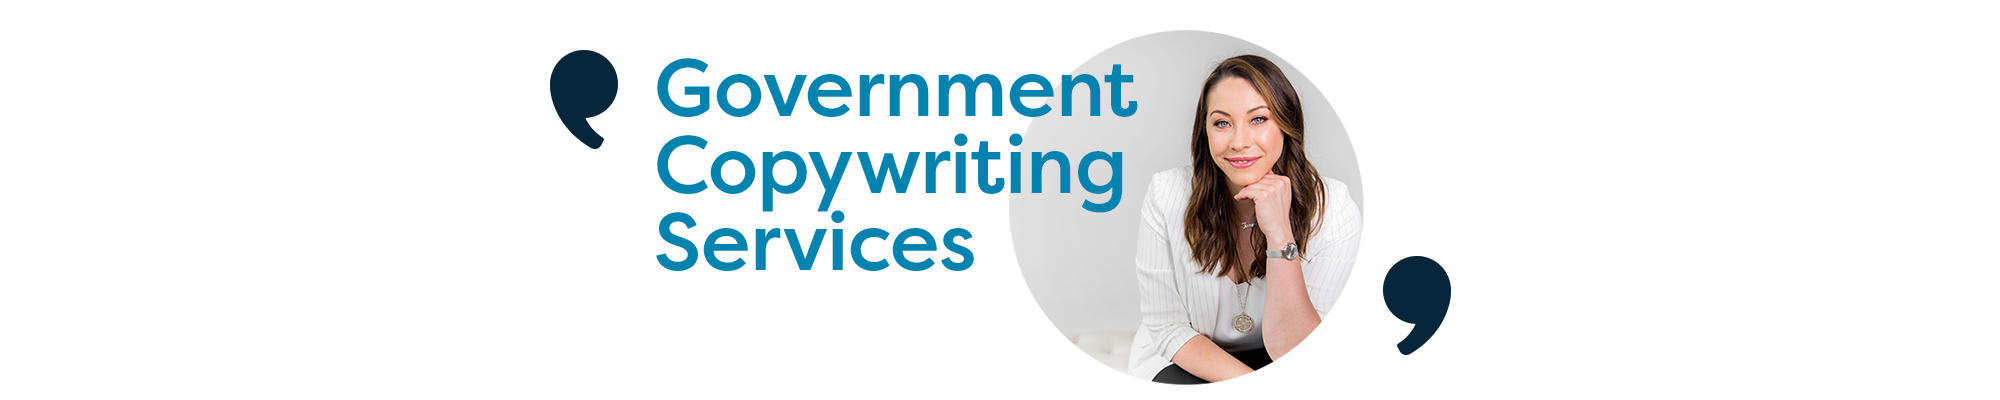 government-copywriting